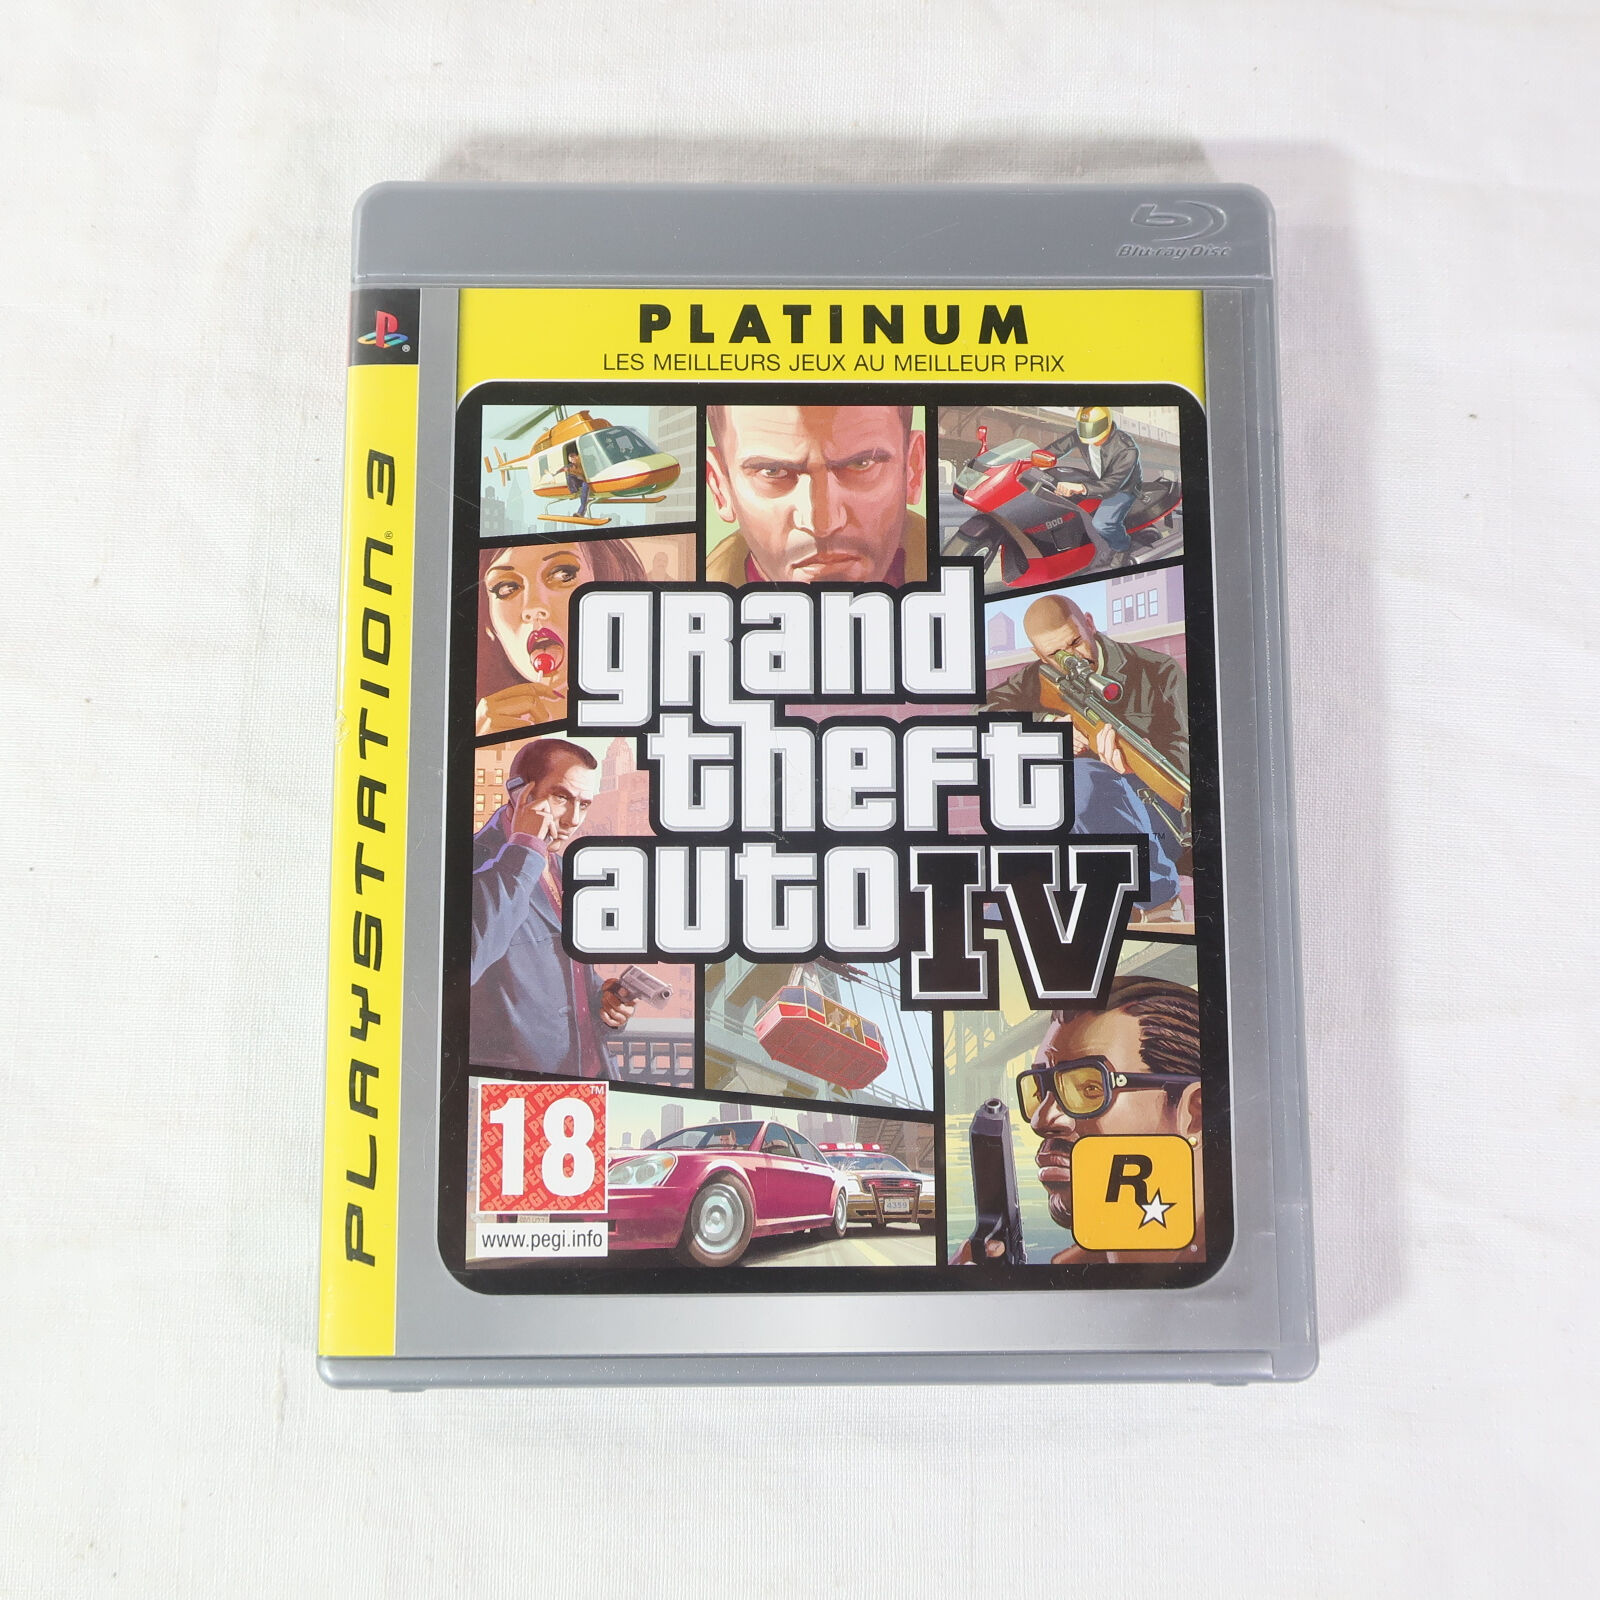 Jeu Playstation 3 Platinium " Grand Theft Auto IV " 2009 Rockstar Games